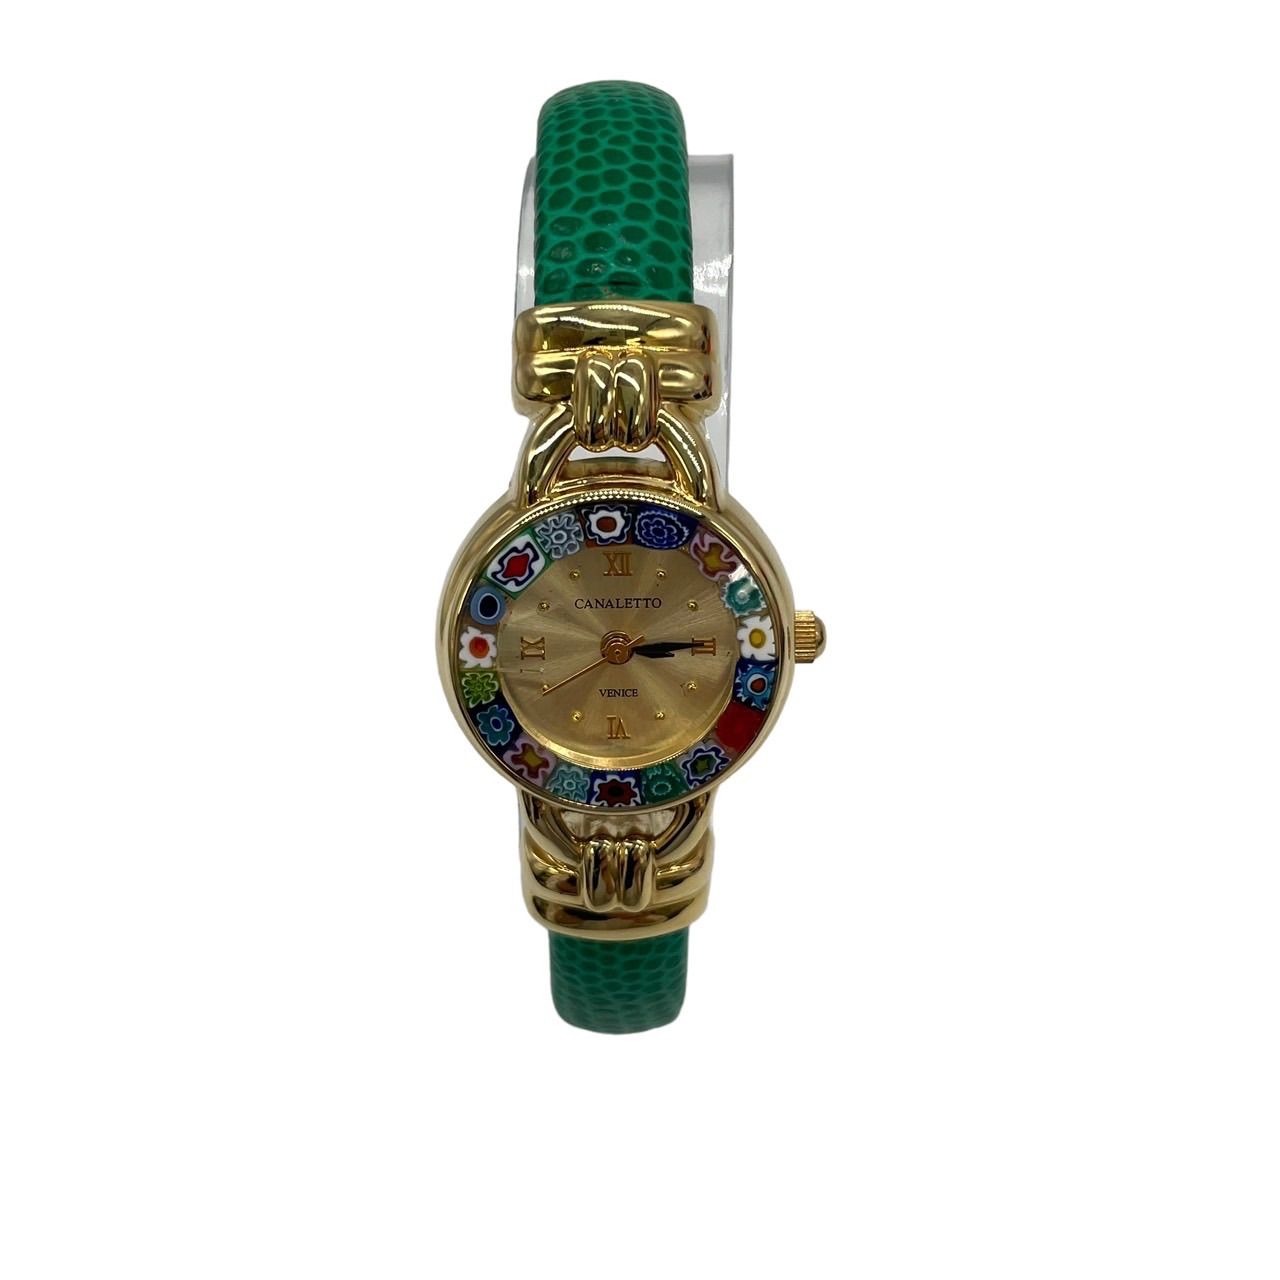 良品 CANALETTO VENICE ベネチアンガラス 腕時計 レディース ゴールドカラー 金文字版 ベルトグリーン バングルタイプ 緑 レディース  腕時計 アナログ時計 クォーツ 電池交換済 - メルカリ